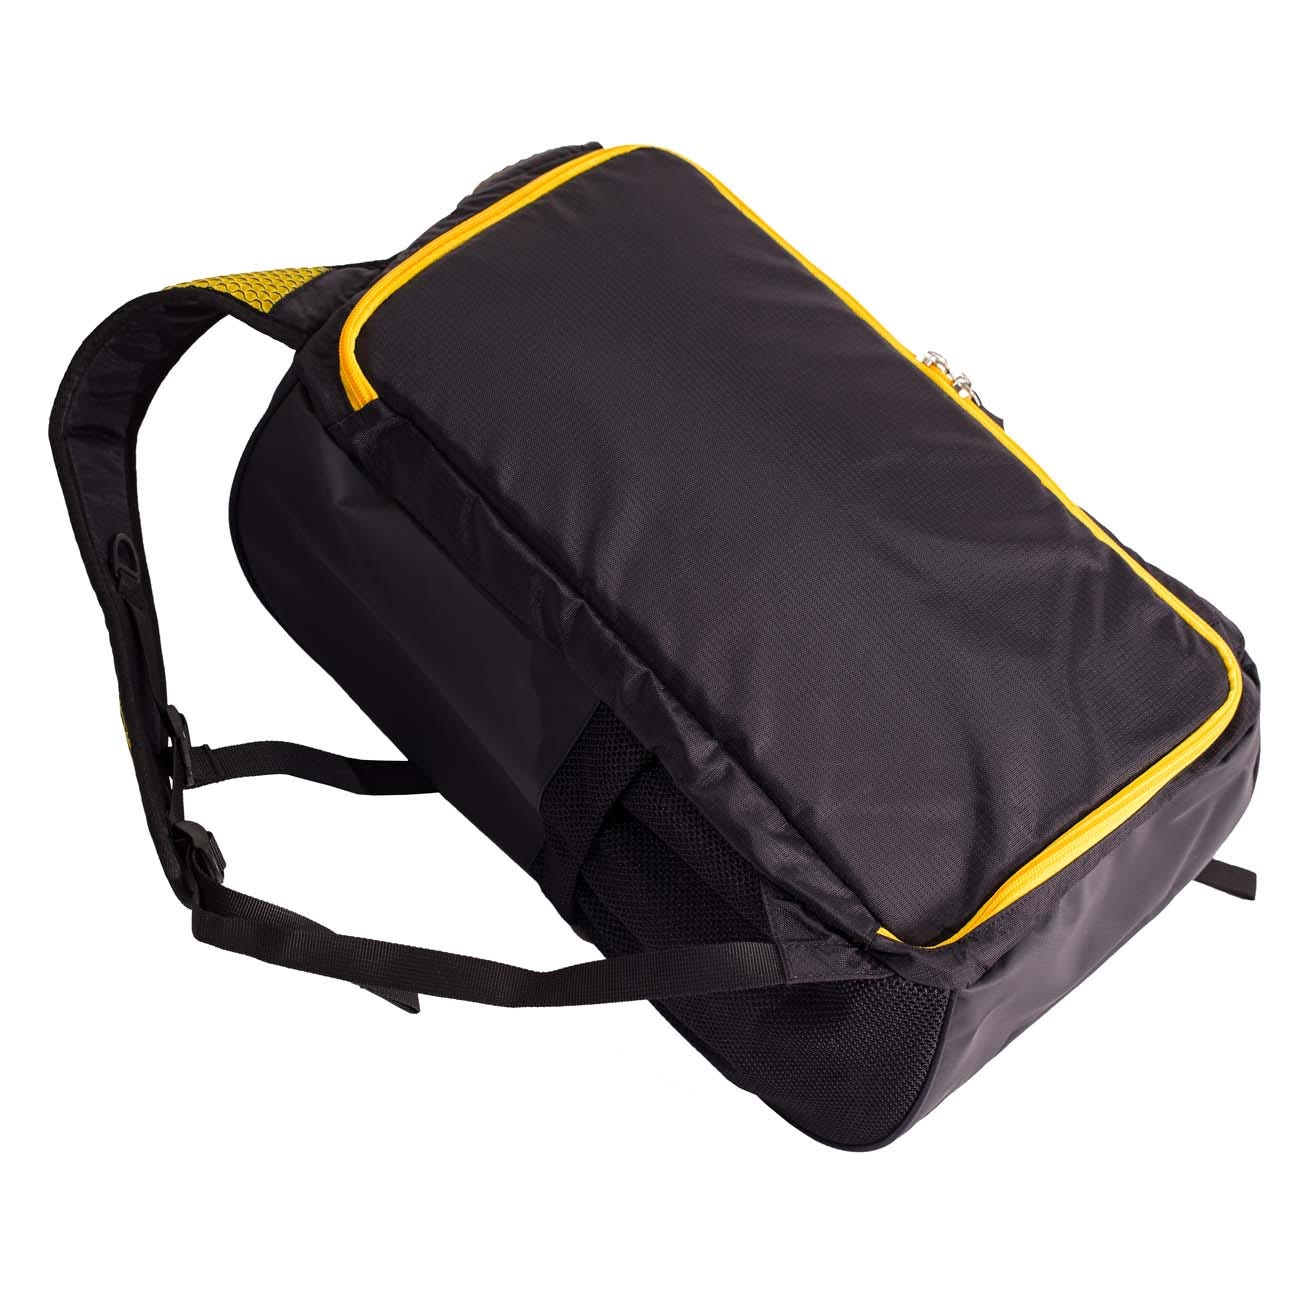 Спортивный рюкзак La Sportiva Climbing Bag